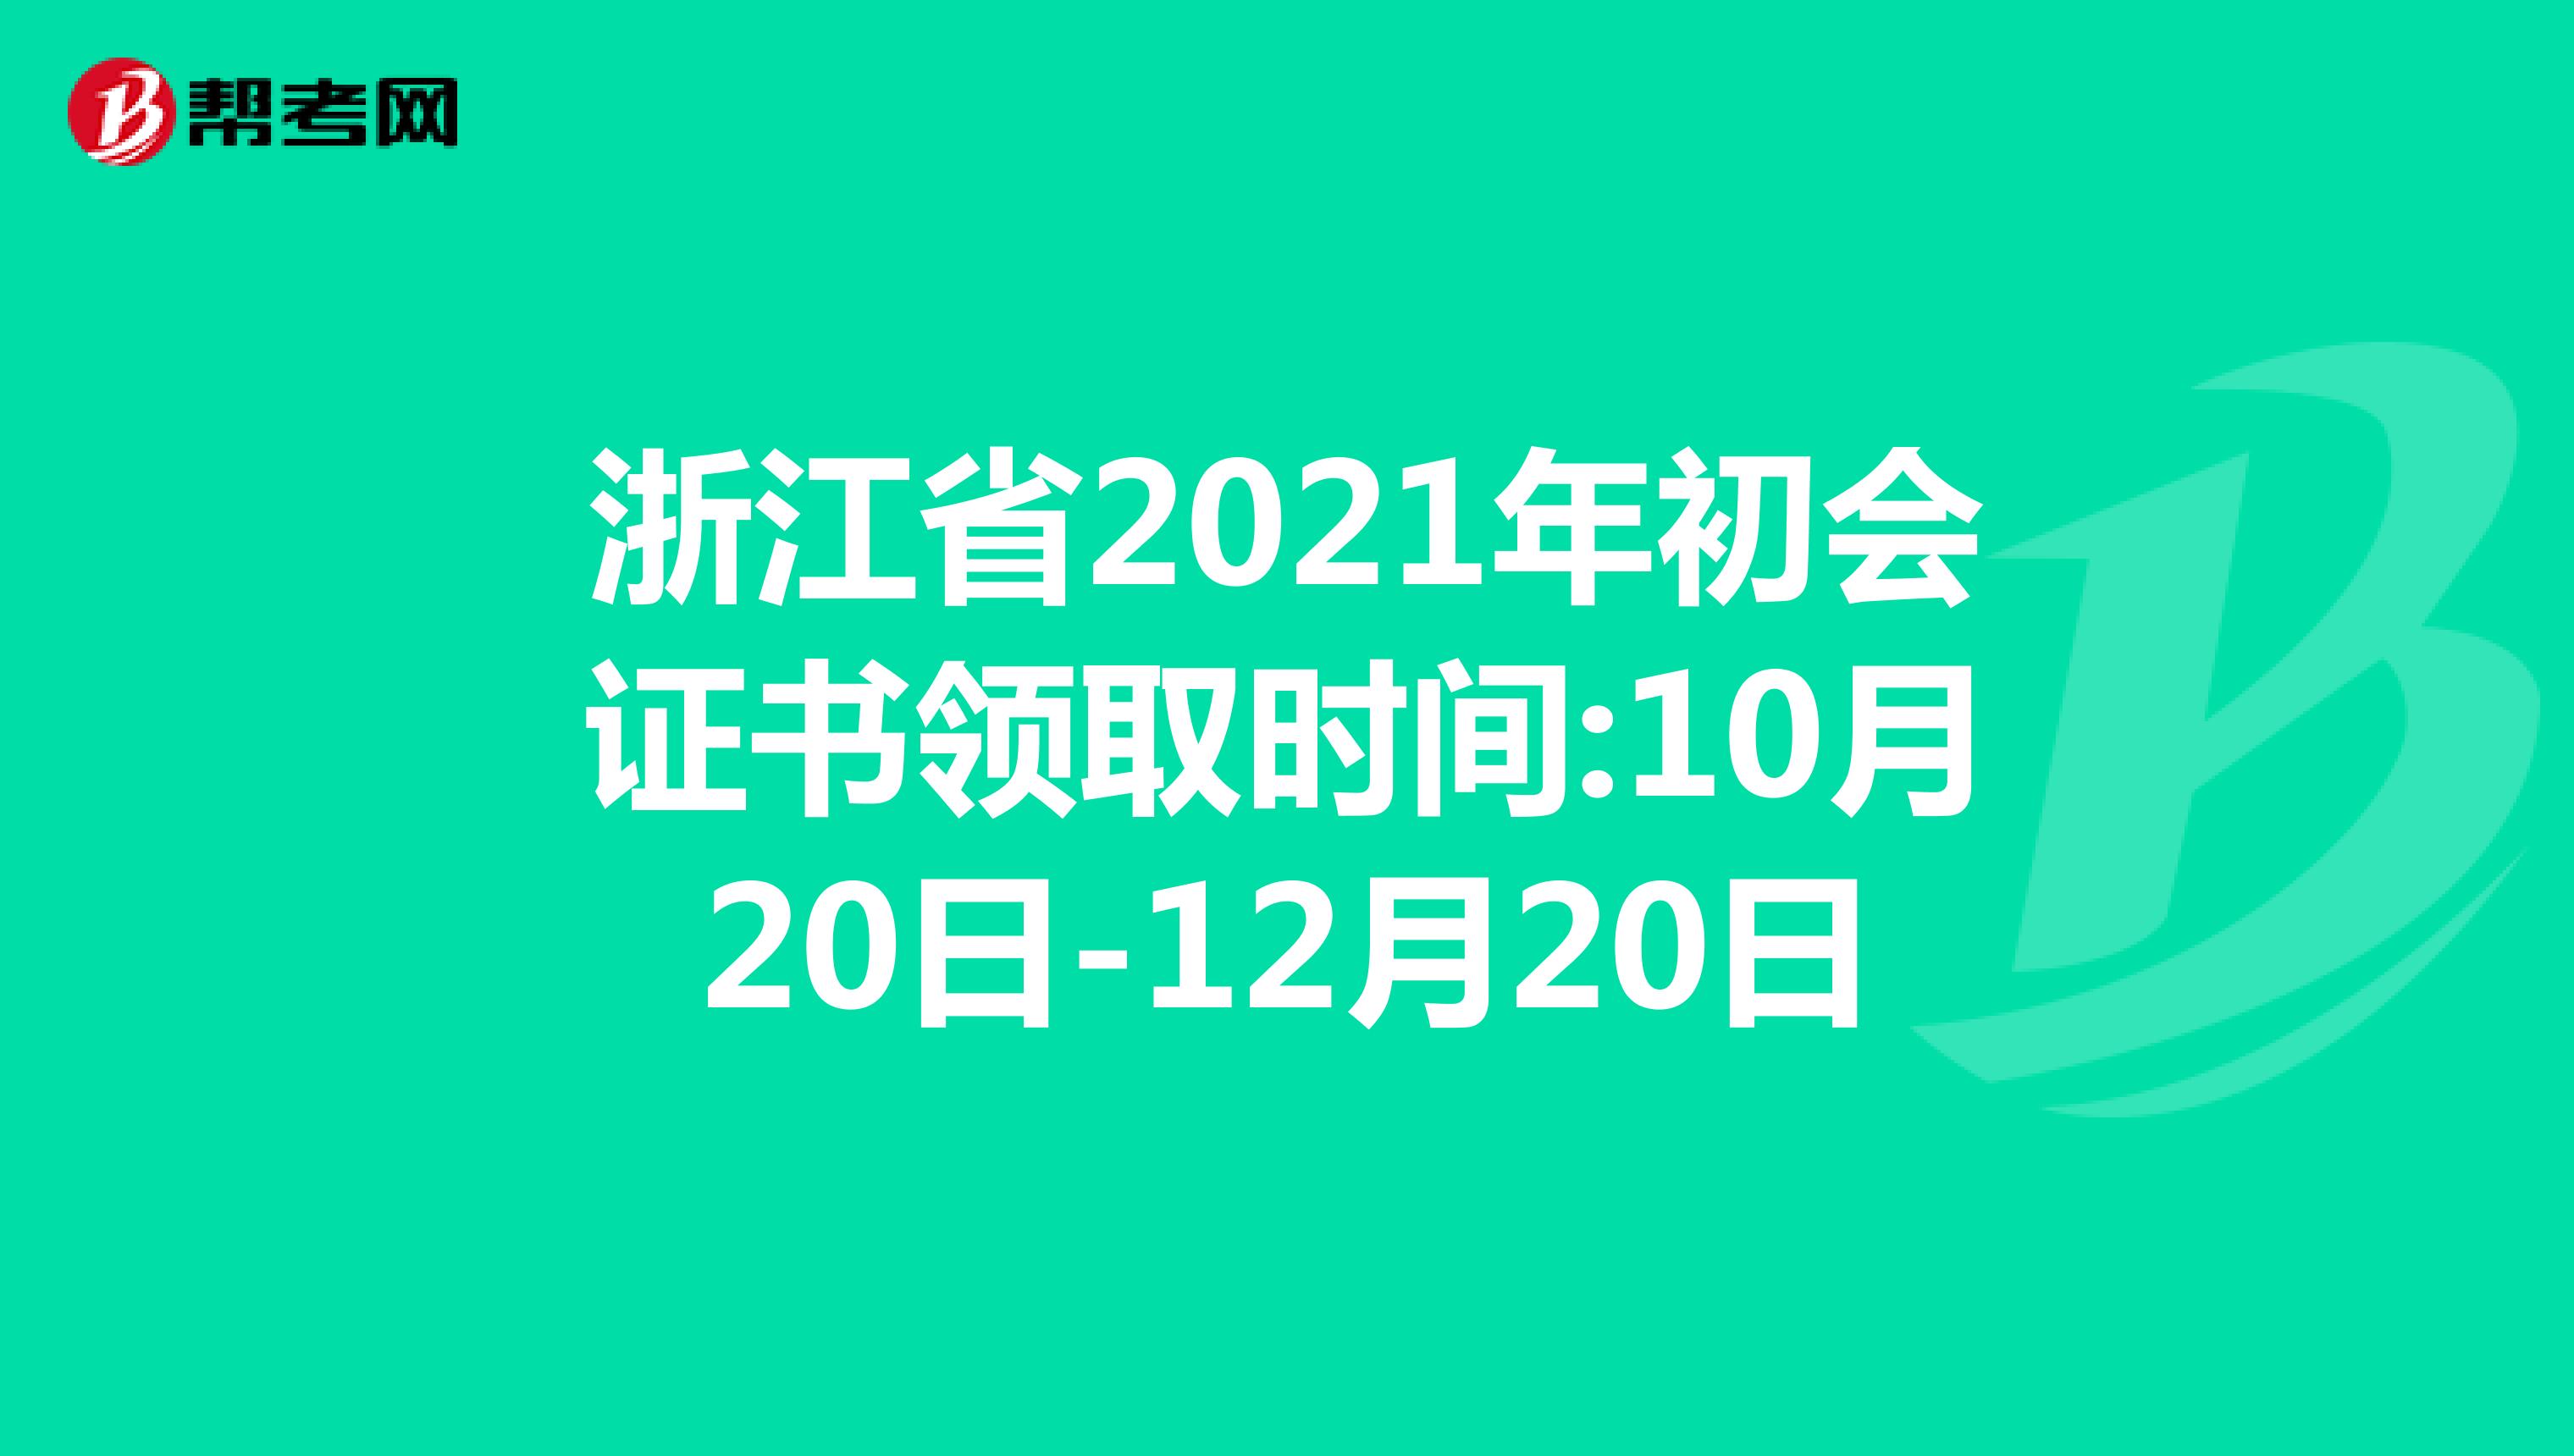 浙江省2021年初会证书领取时间:10月20日-12月20日